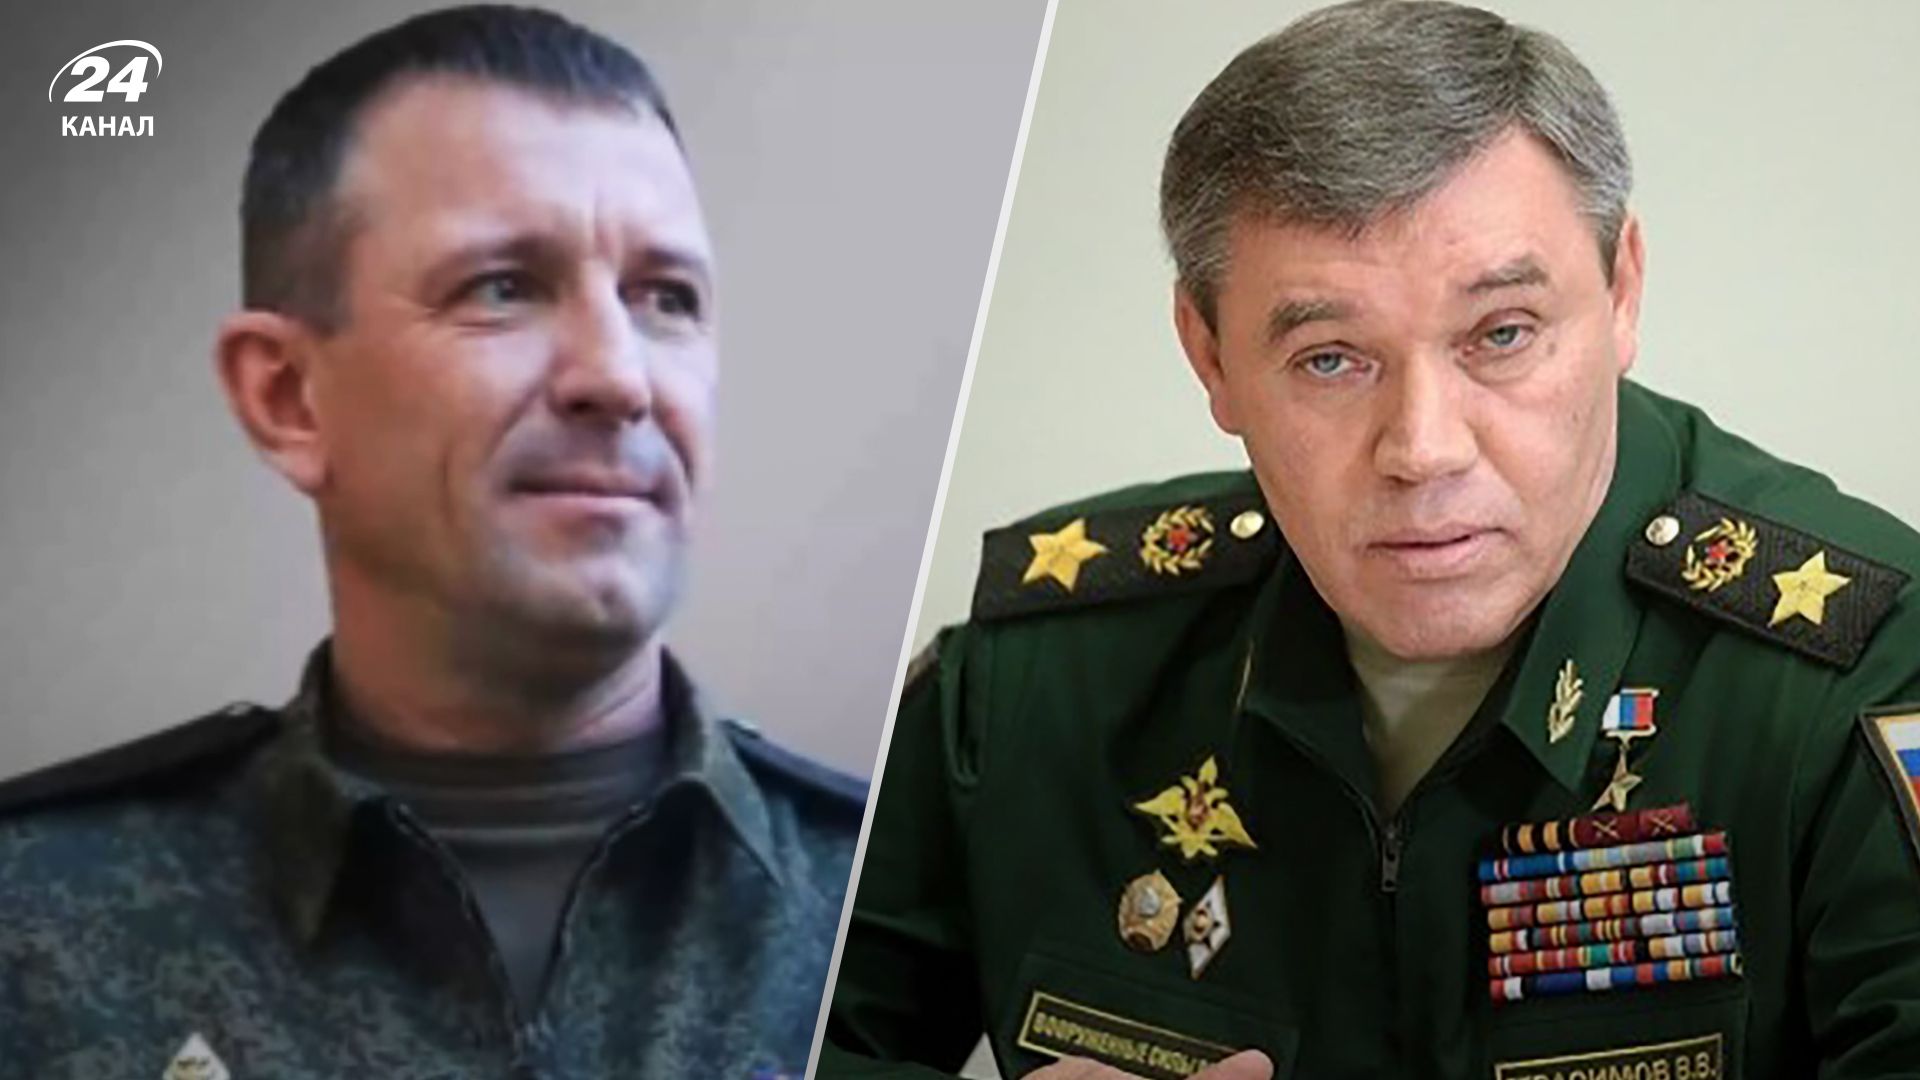 Иван Попов уволен по приказу Герасимова – одиозный генерал записал аудио